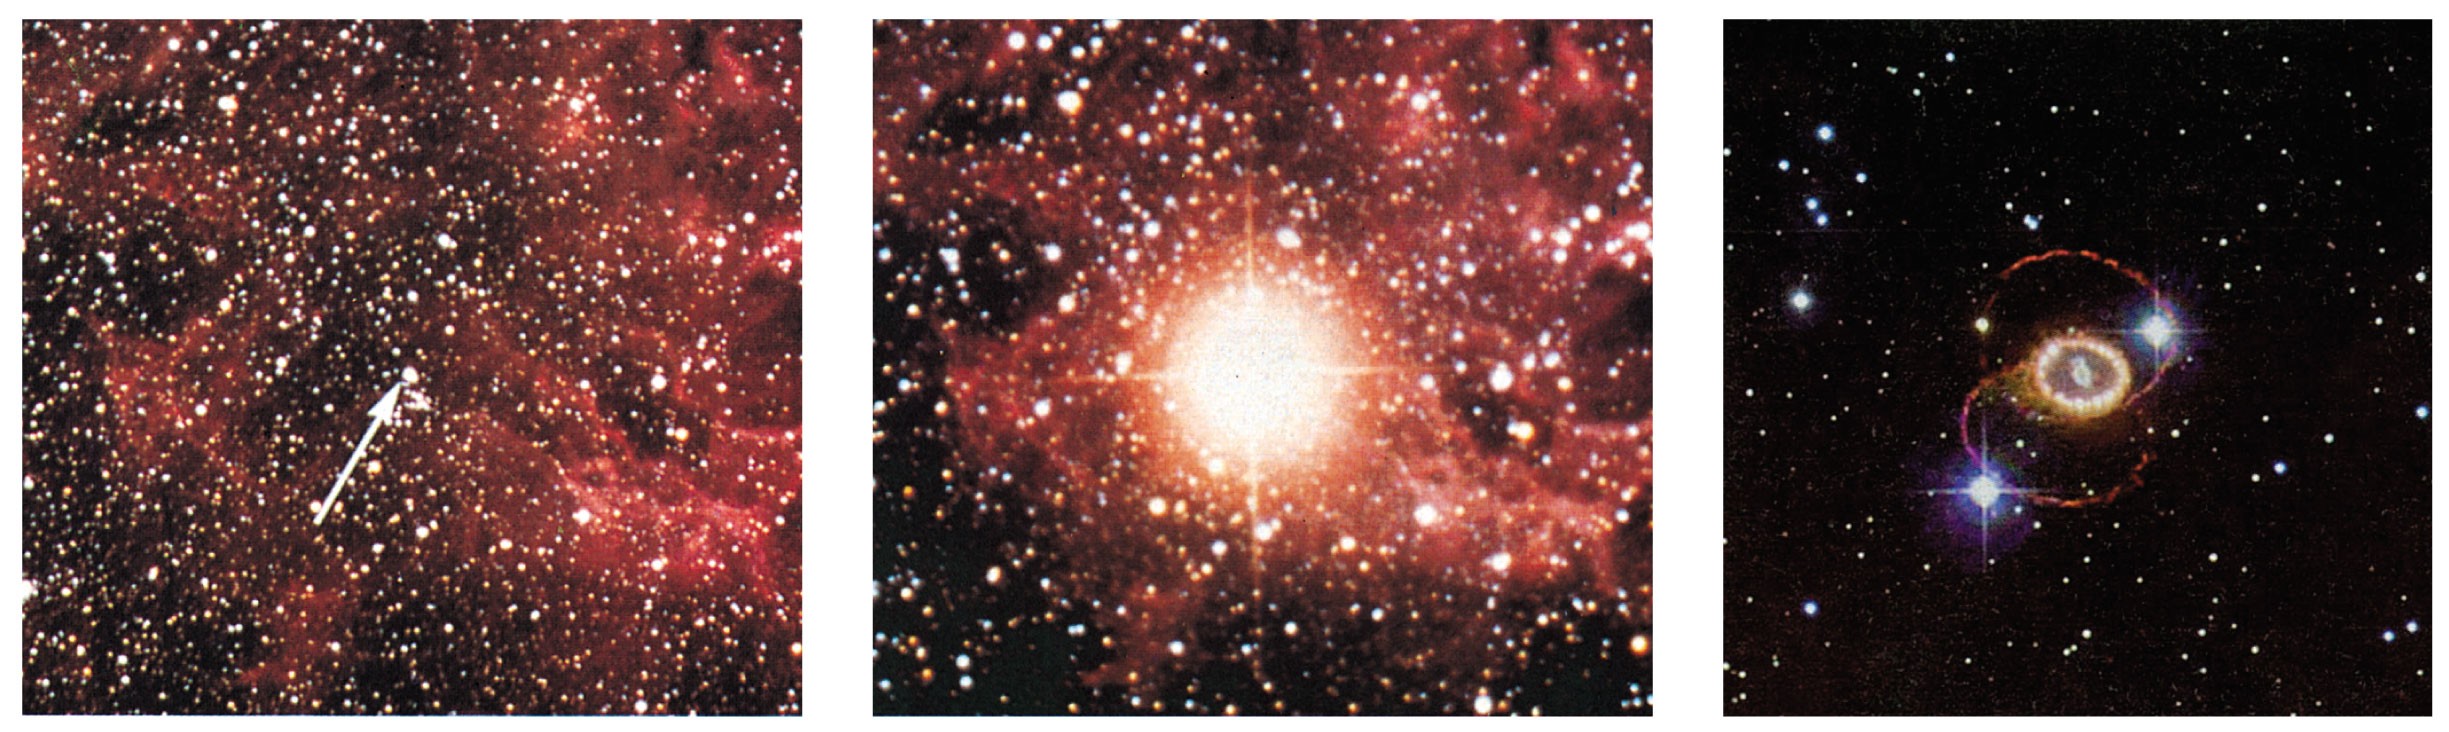 L evoluzione dei corpi celesti L esplosione della supernova SN 1987A,